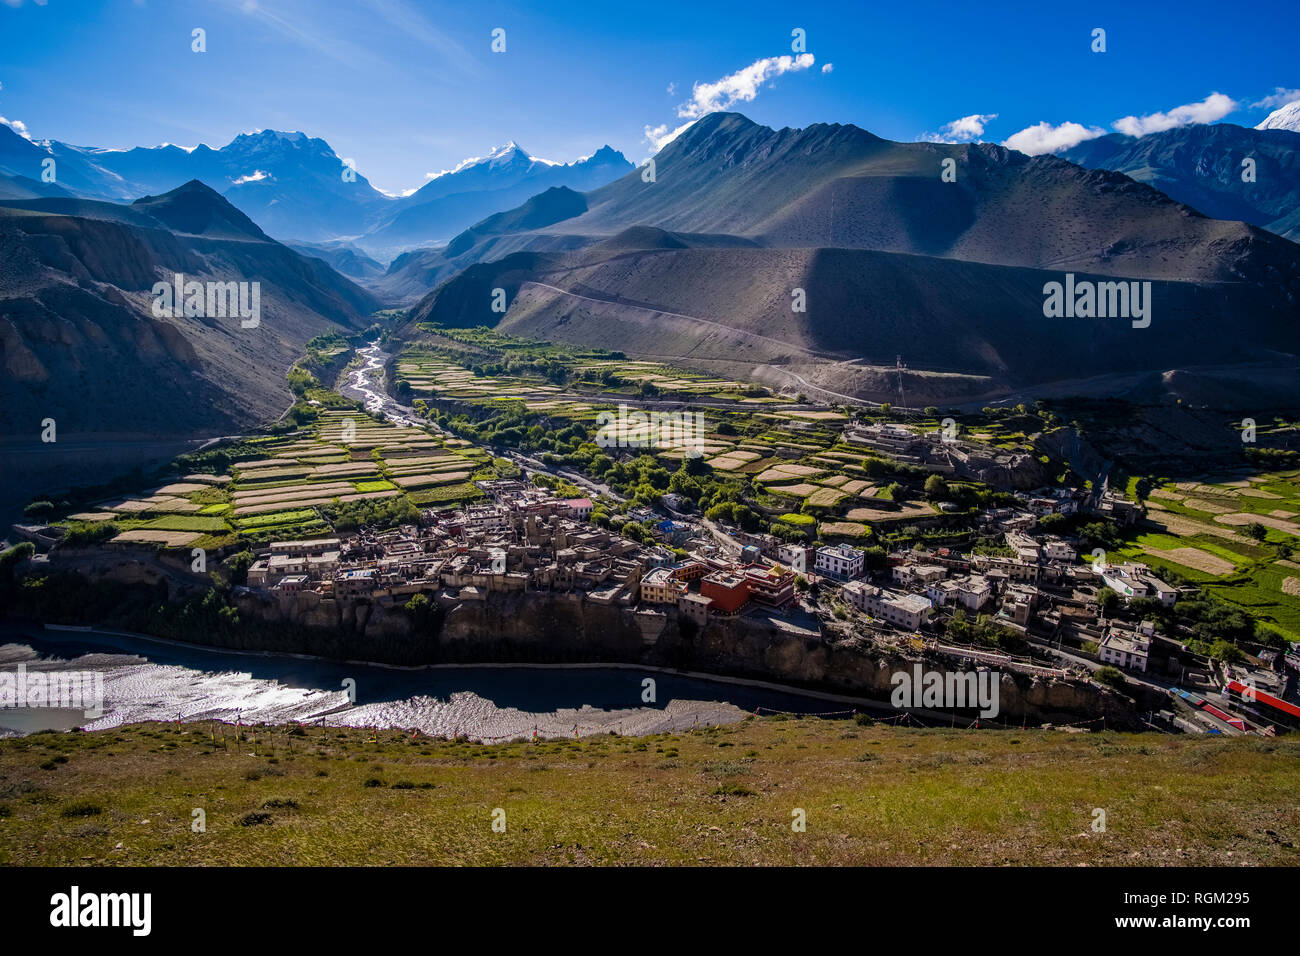 Vista aérea panorámica sobre la ciudad y el entorno agrícola en el valle de Kali Gandaki Foto de stock